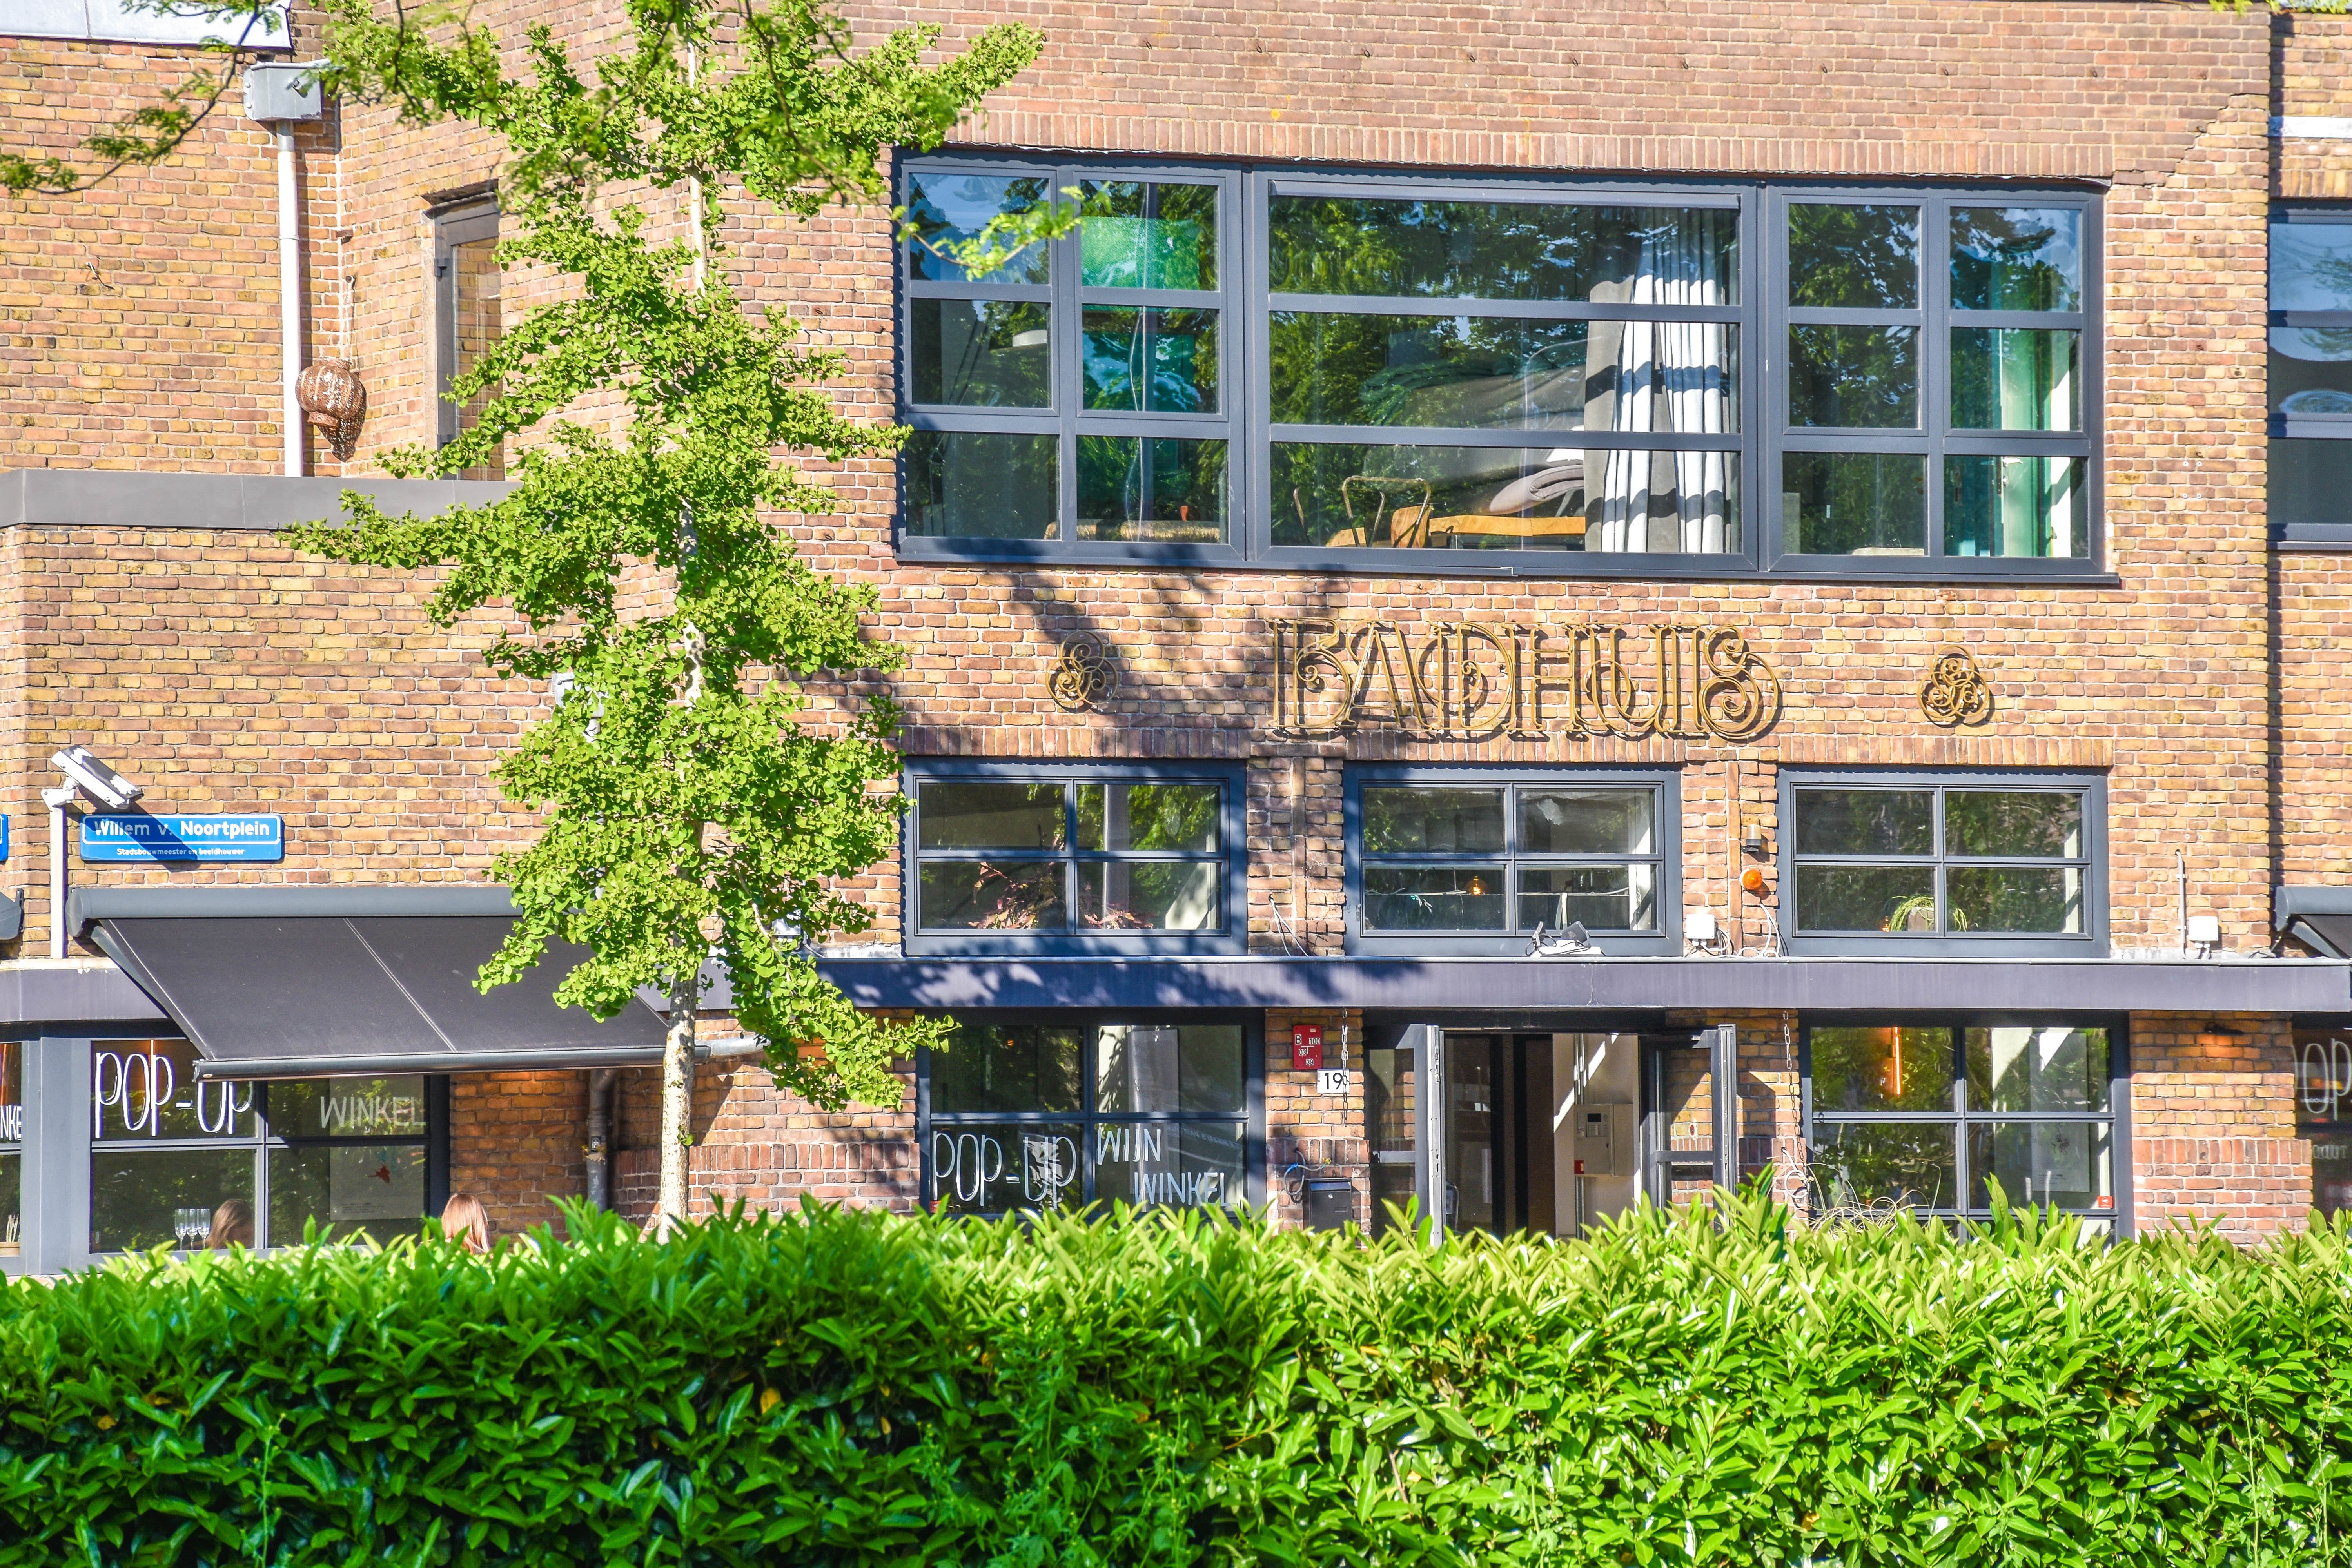 Woning / appartement - Utrecht - Jacob van der Borchstraat 74